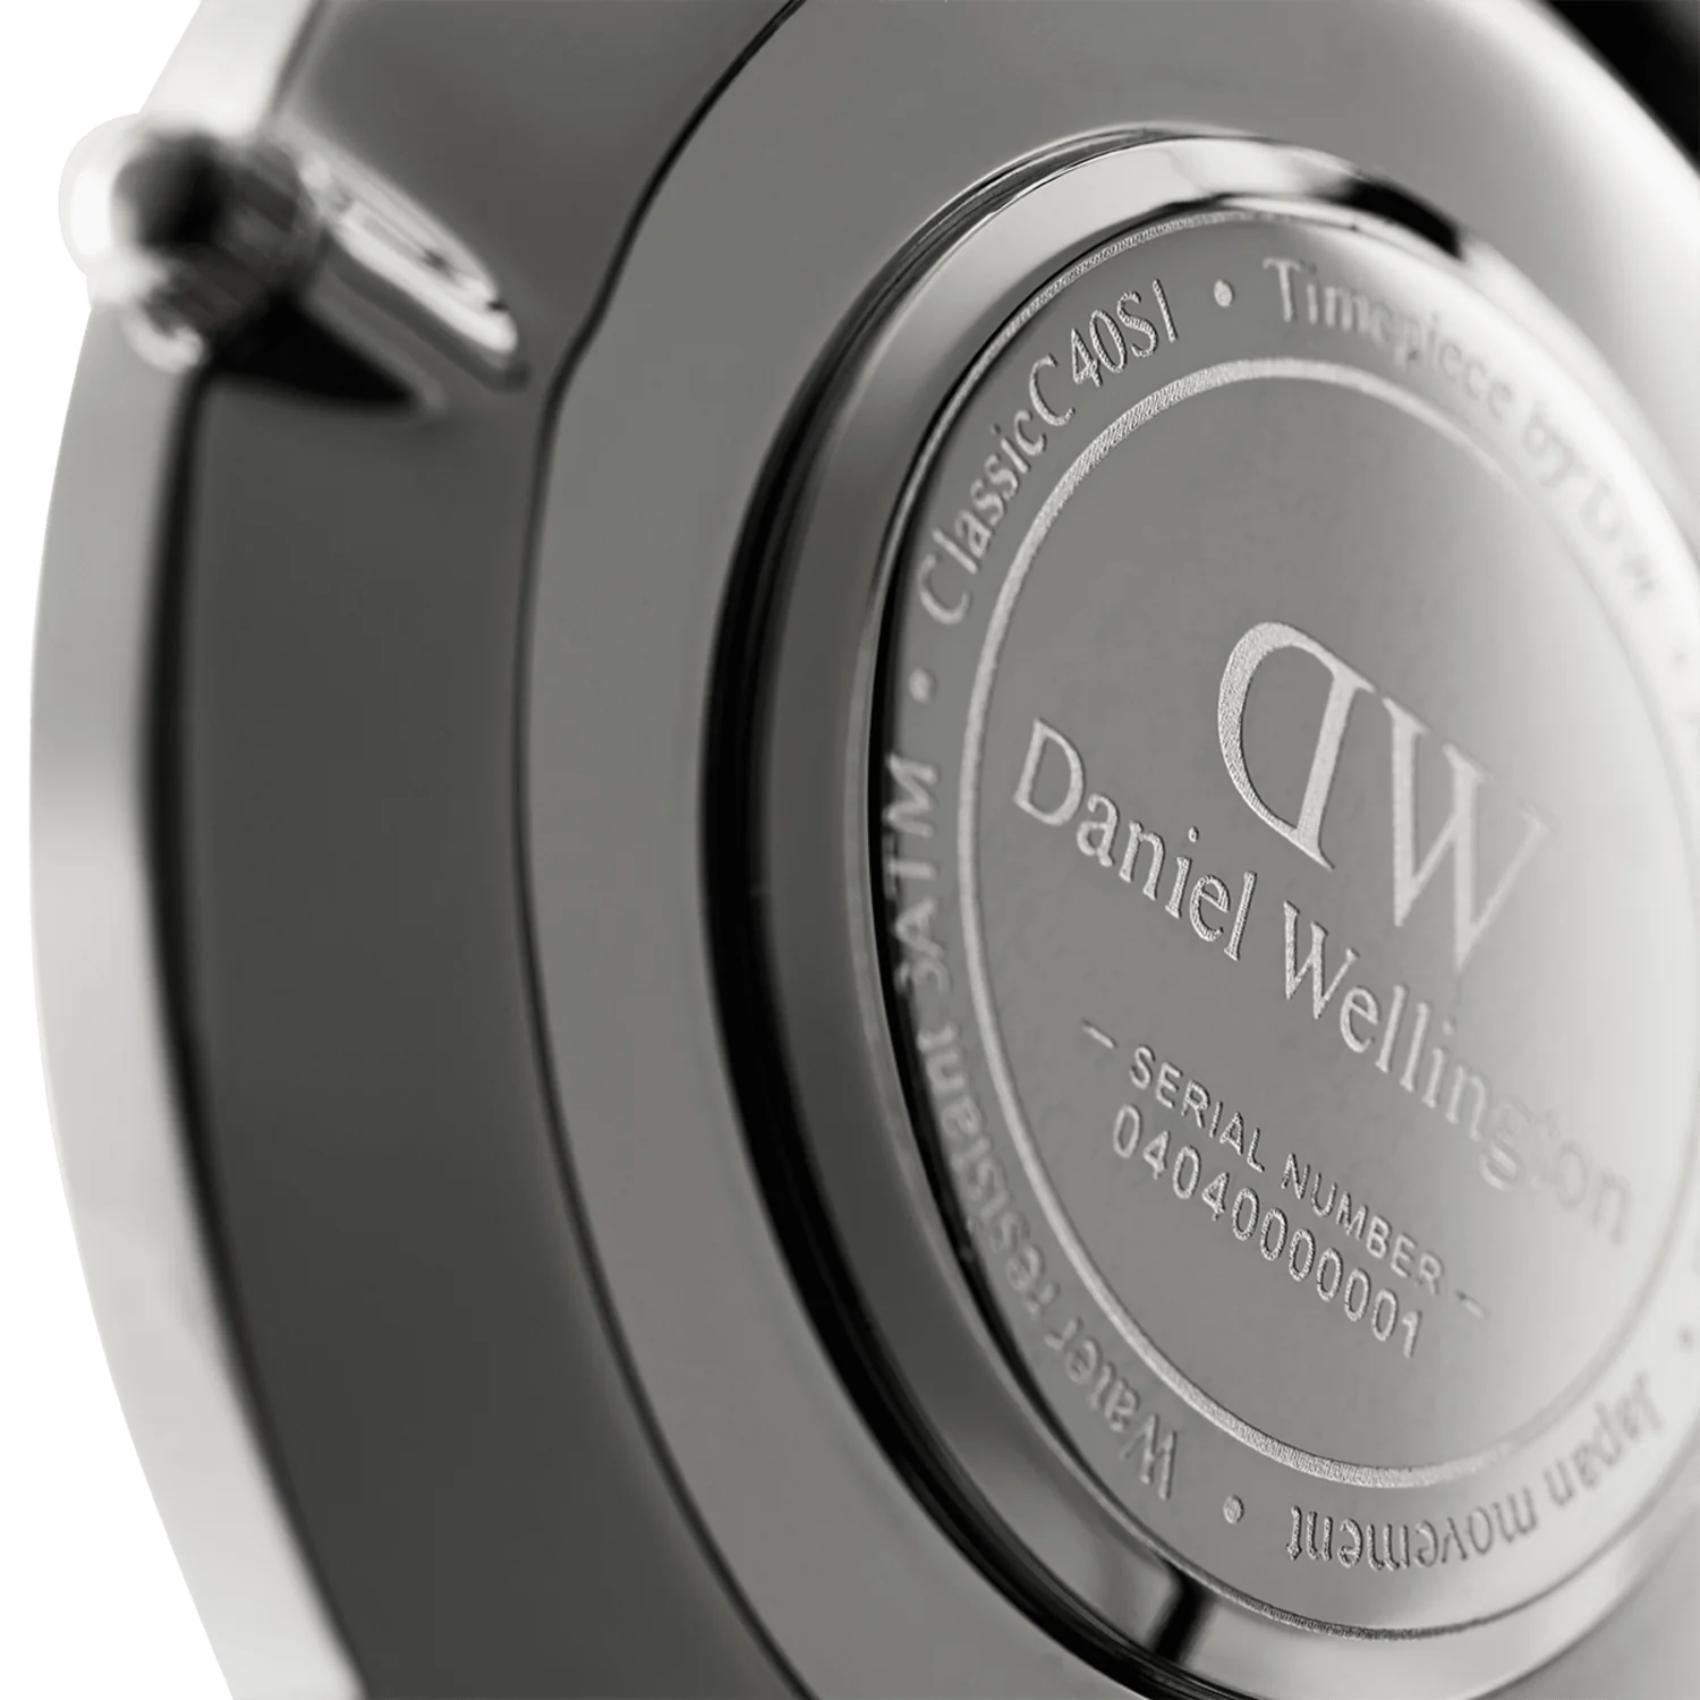 Ρολόι Daniel Wellington Sheffield DW00100020 με μαύρο δερμάτινο λουράκι, άσπρο καντραν, μηχανισμό μπαταρίας και στρογγυλό σχήμα με διάμετρο 40mm αδιάβροχο στις 3ΑΤΜ-30Μ.